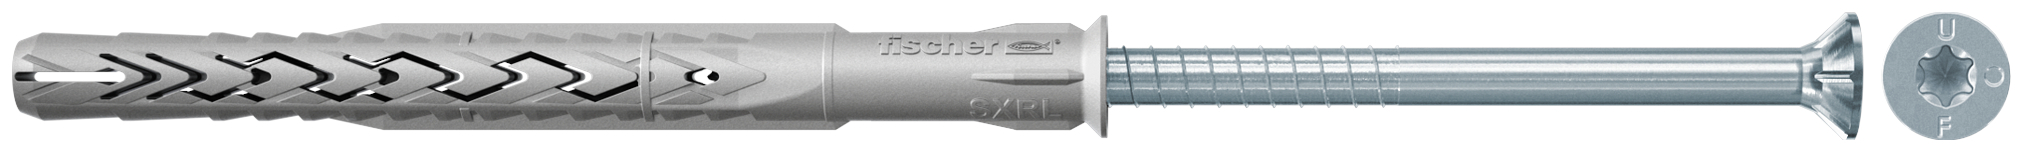 fischer Tasselli prolungati SXRL 14X80 T (1 Pz.) Tassello prolungato in nylon con marcatura CE con vite premontata T.S.P. impronta torx.